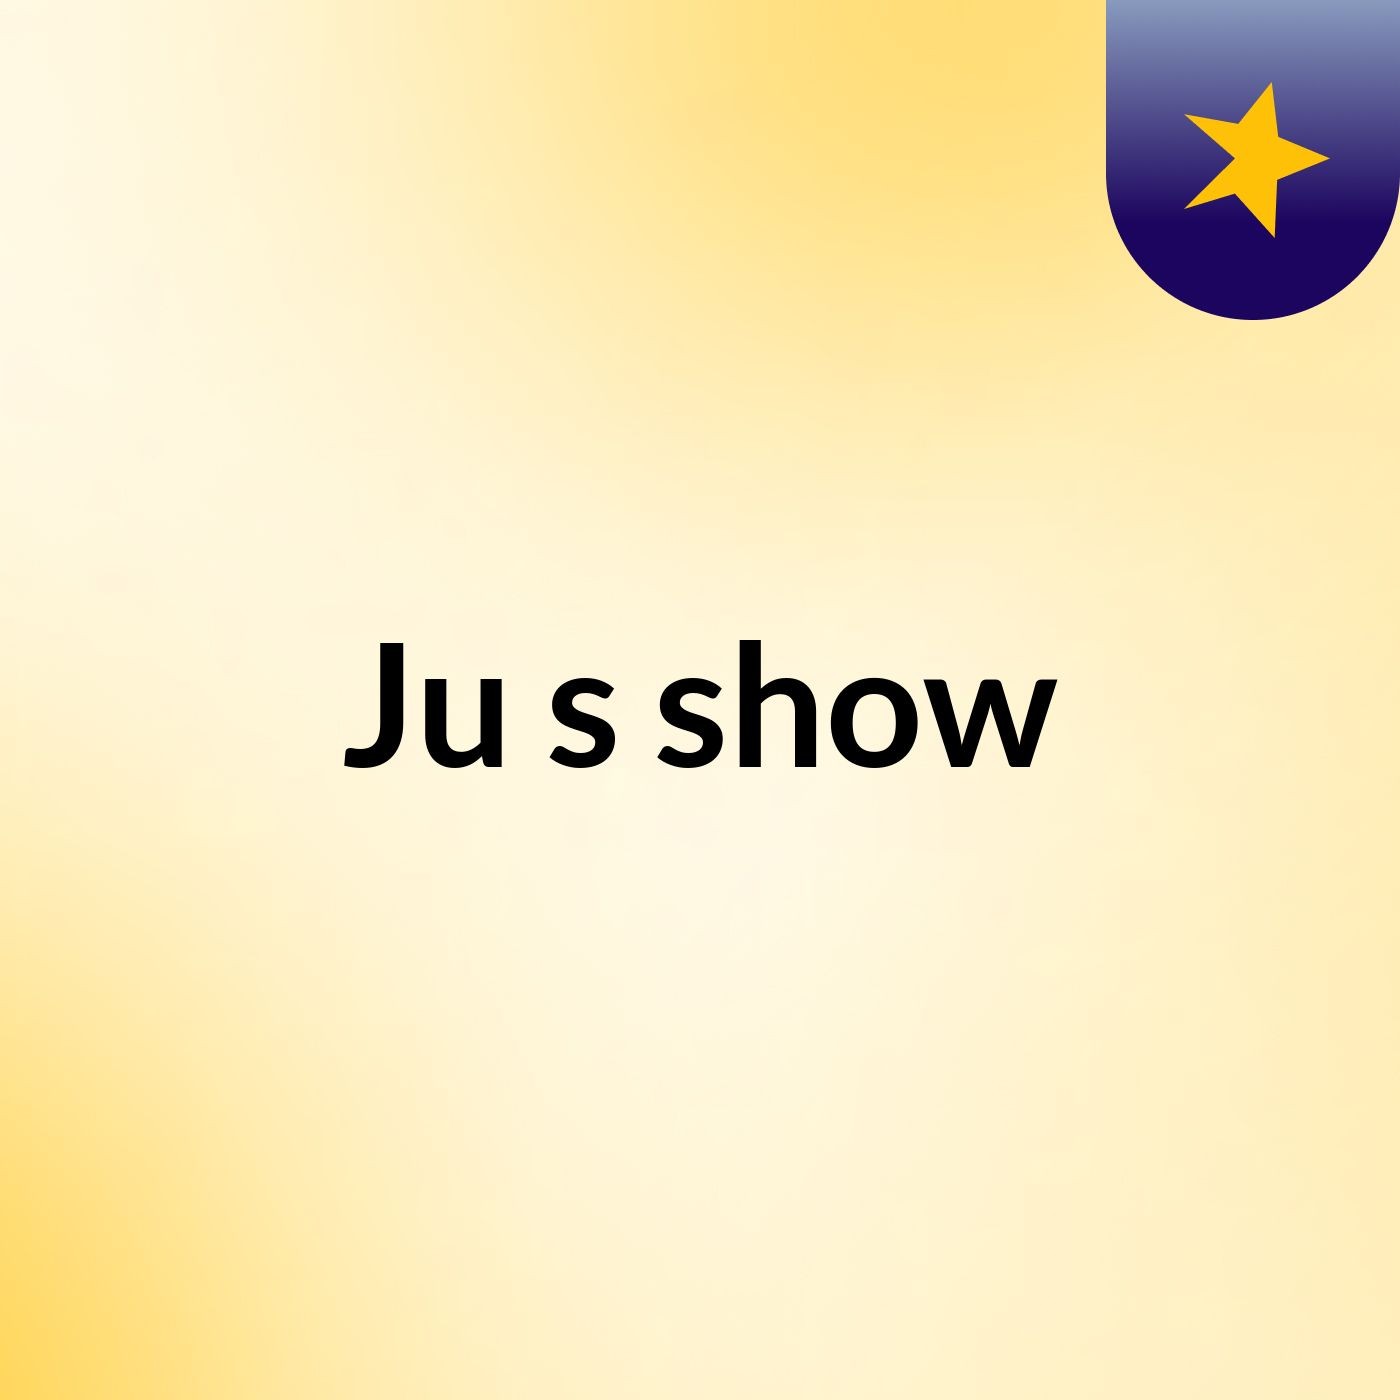 Ju's show